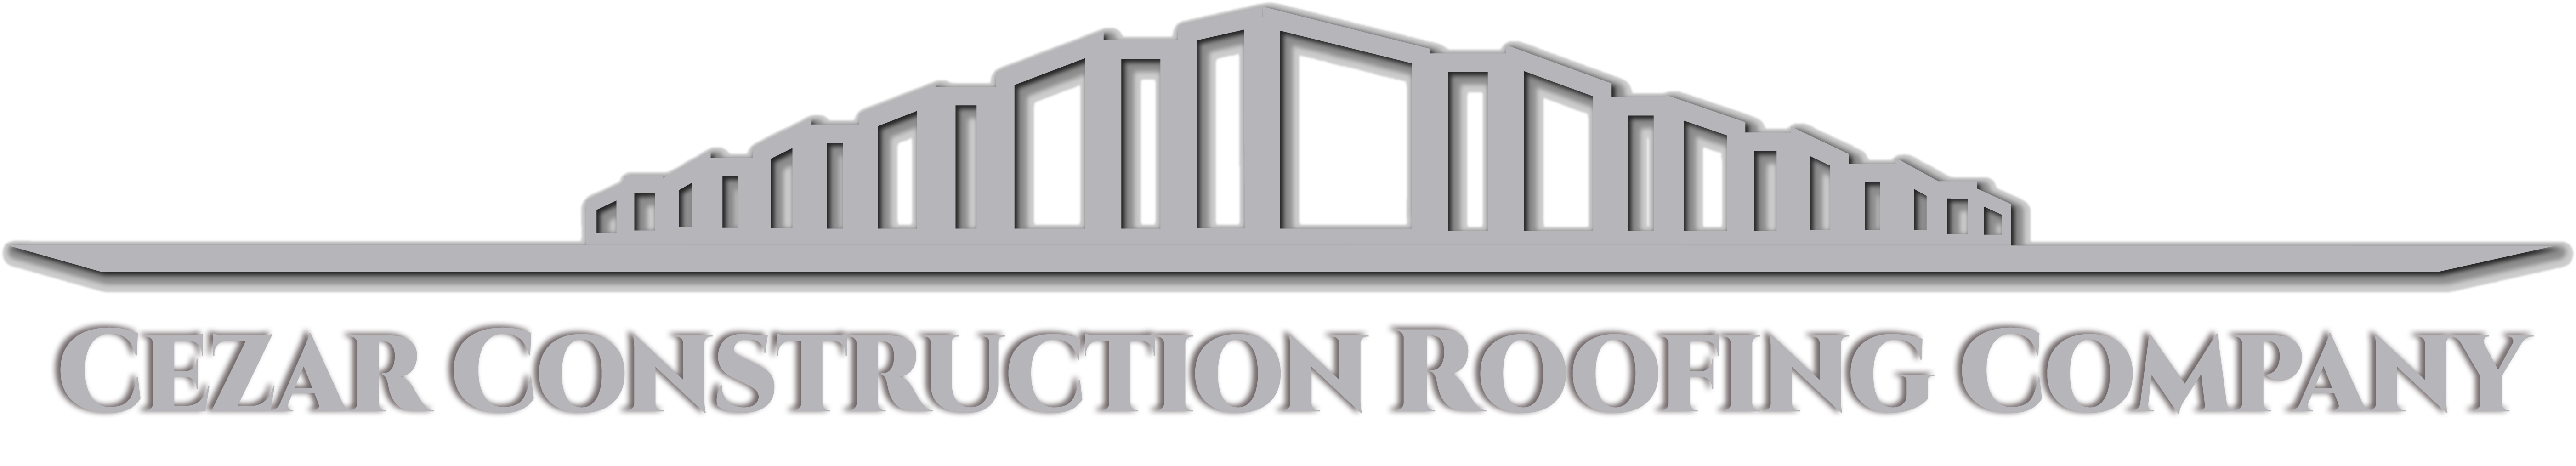 Cezar Construction Roofing Company Logo